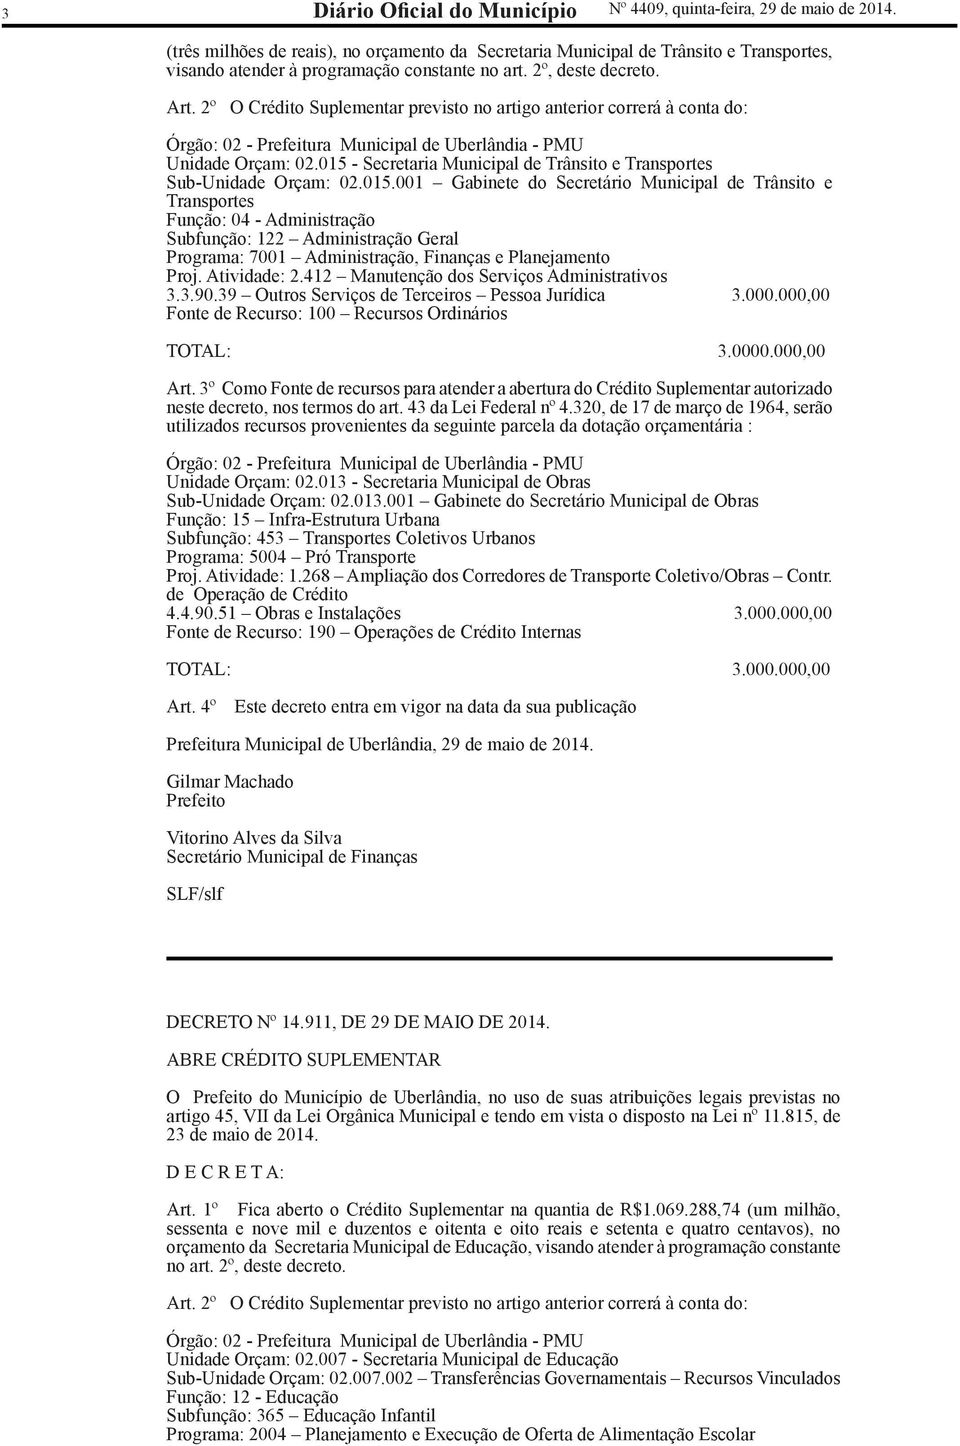 2º O Crédito Suplementar previsto no artigo anterior correrá à conta do: Órgão: 02 - Prefeitura Municipal de Uberlândia - PMU Unidade Orçam: 02.